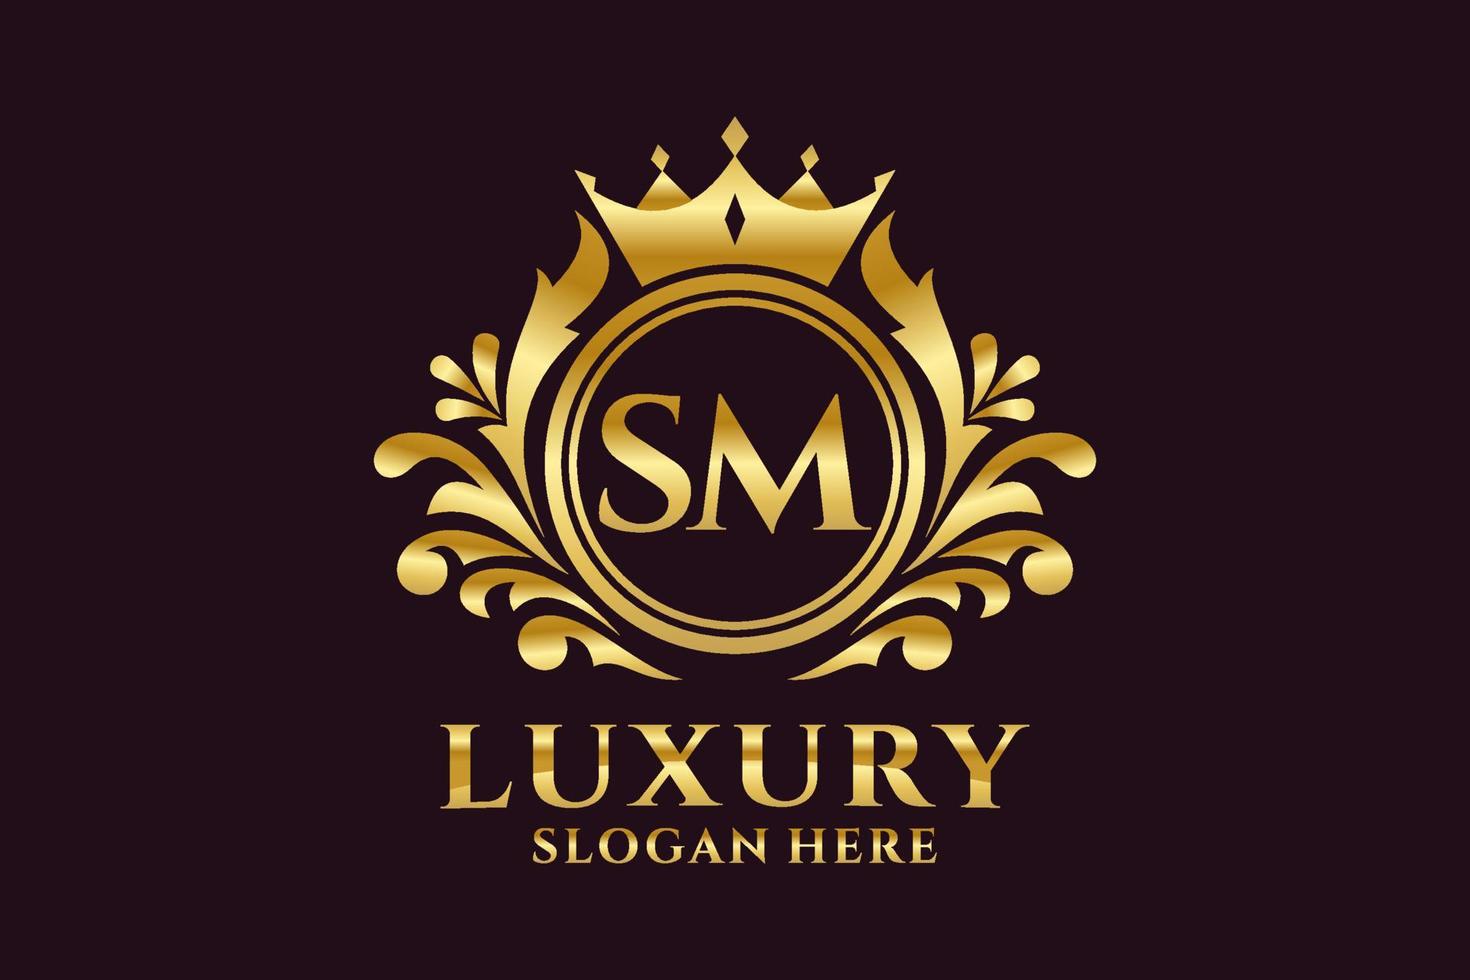 königliche Luxus-Logo-Vorlage mit anfänglichem sm-Buchstaben in Vektorgrafiken für luxuriöse Branding-Projekte und andere Vektorillustrationen. vektor